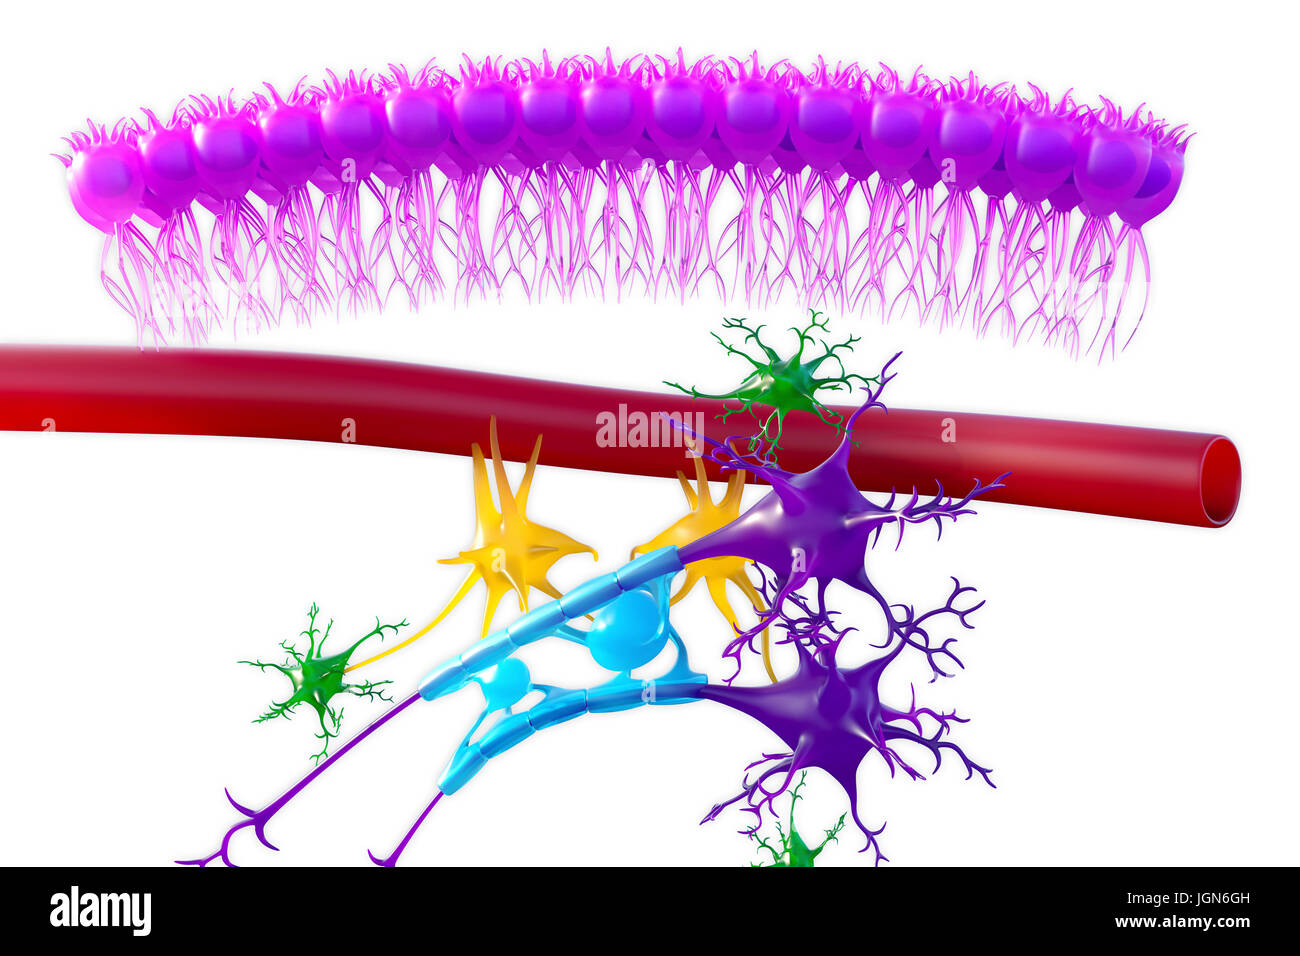 Cervello il tessuto nervoso, illustrazione. Visto qui sono cellule ependimali (rosa), un capillare (rosso), astrociti (verdi), cellule microgliali (giallo) e due cellule nervose (viola scuro) con guaine mieliniche (luce blu) sulla loro assoni. Foto Stock